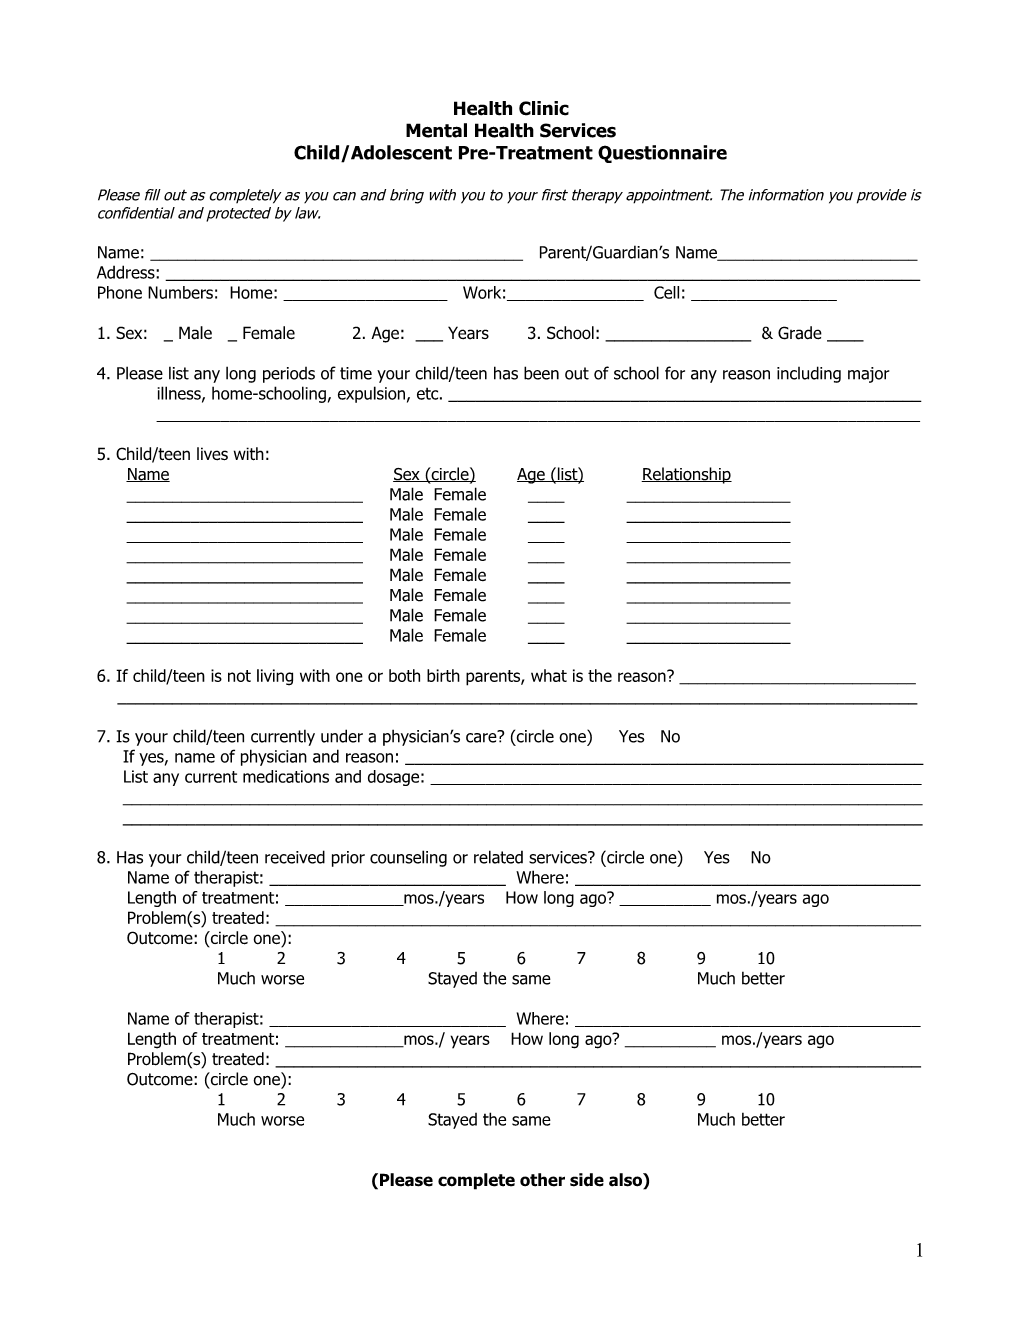 Child/Adolescentpre-Treatment Questionnaire